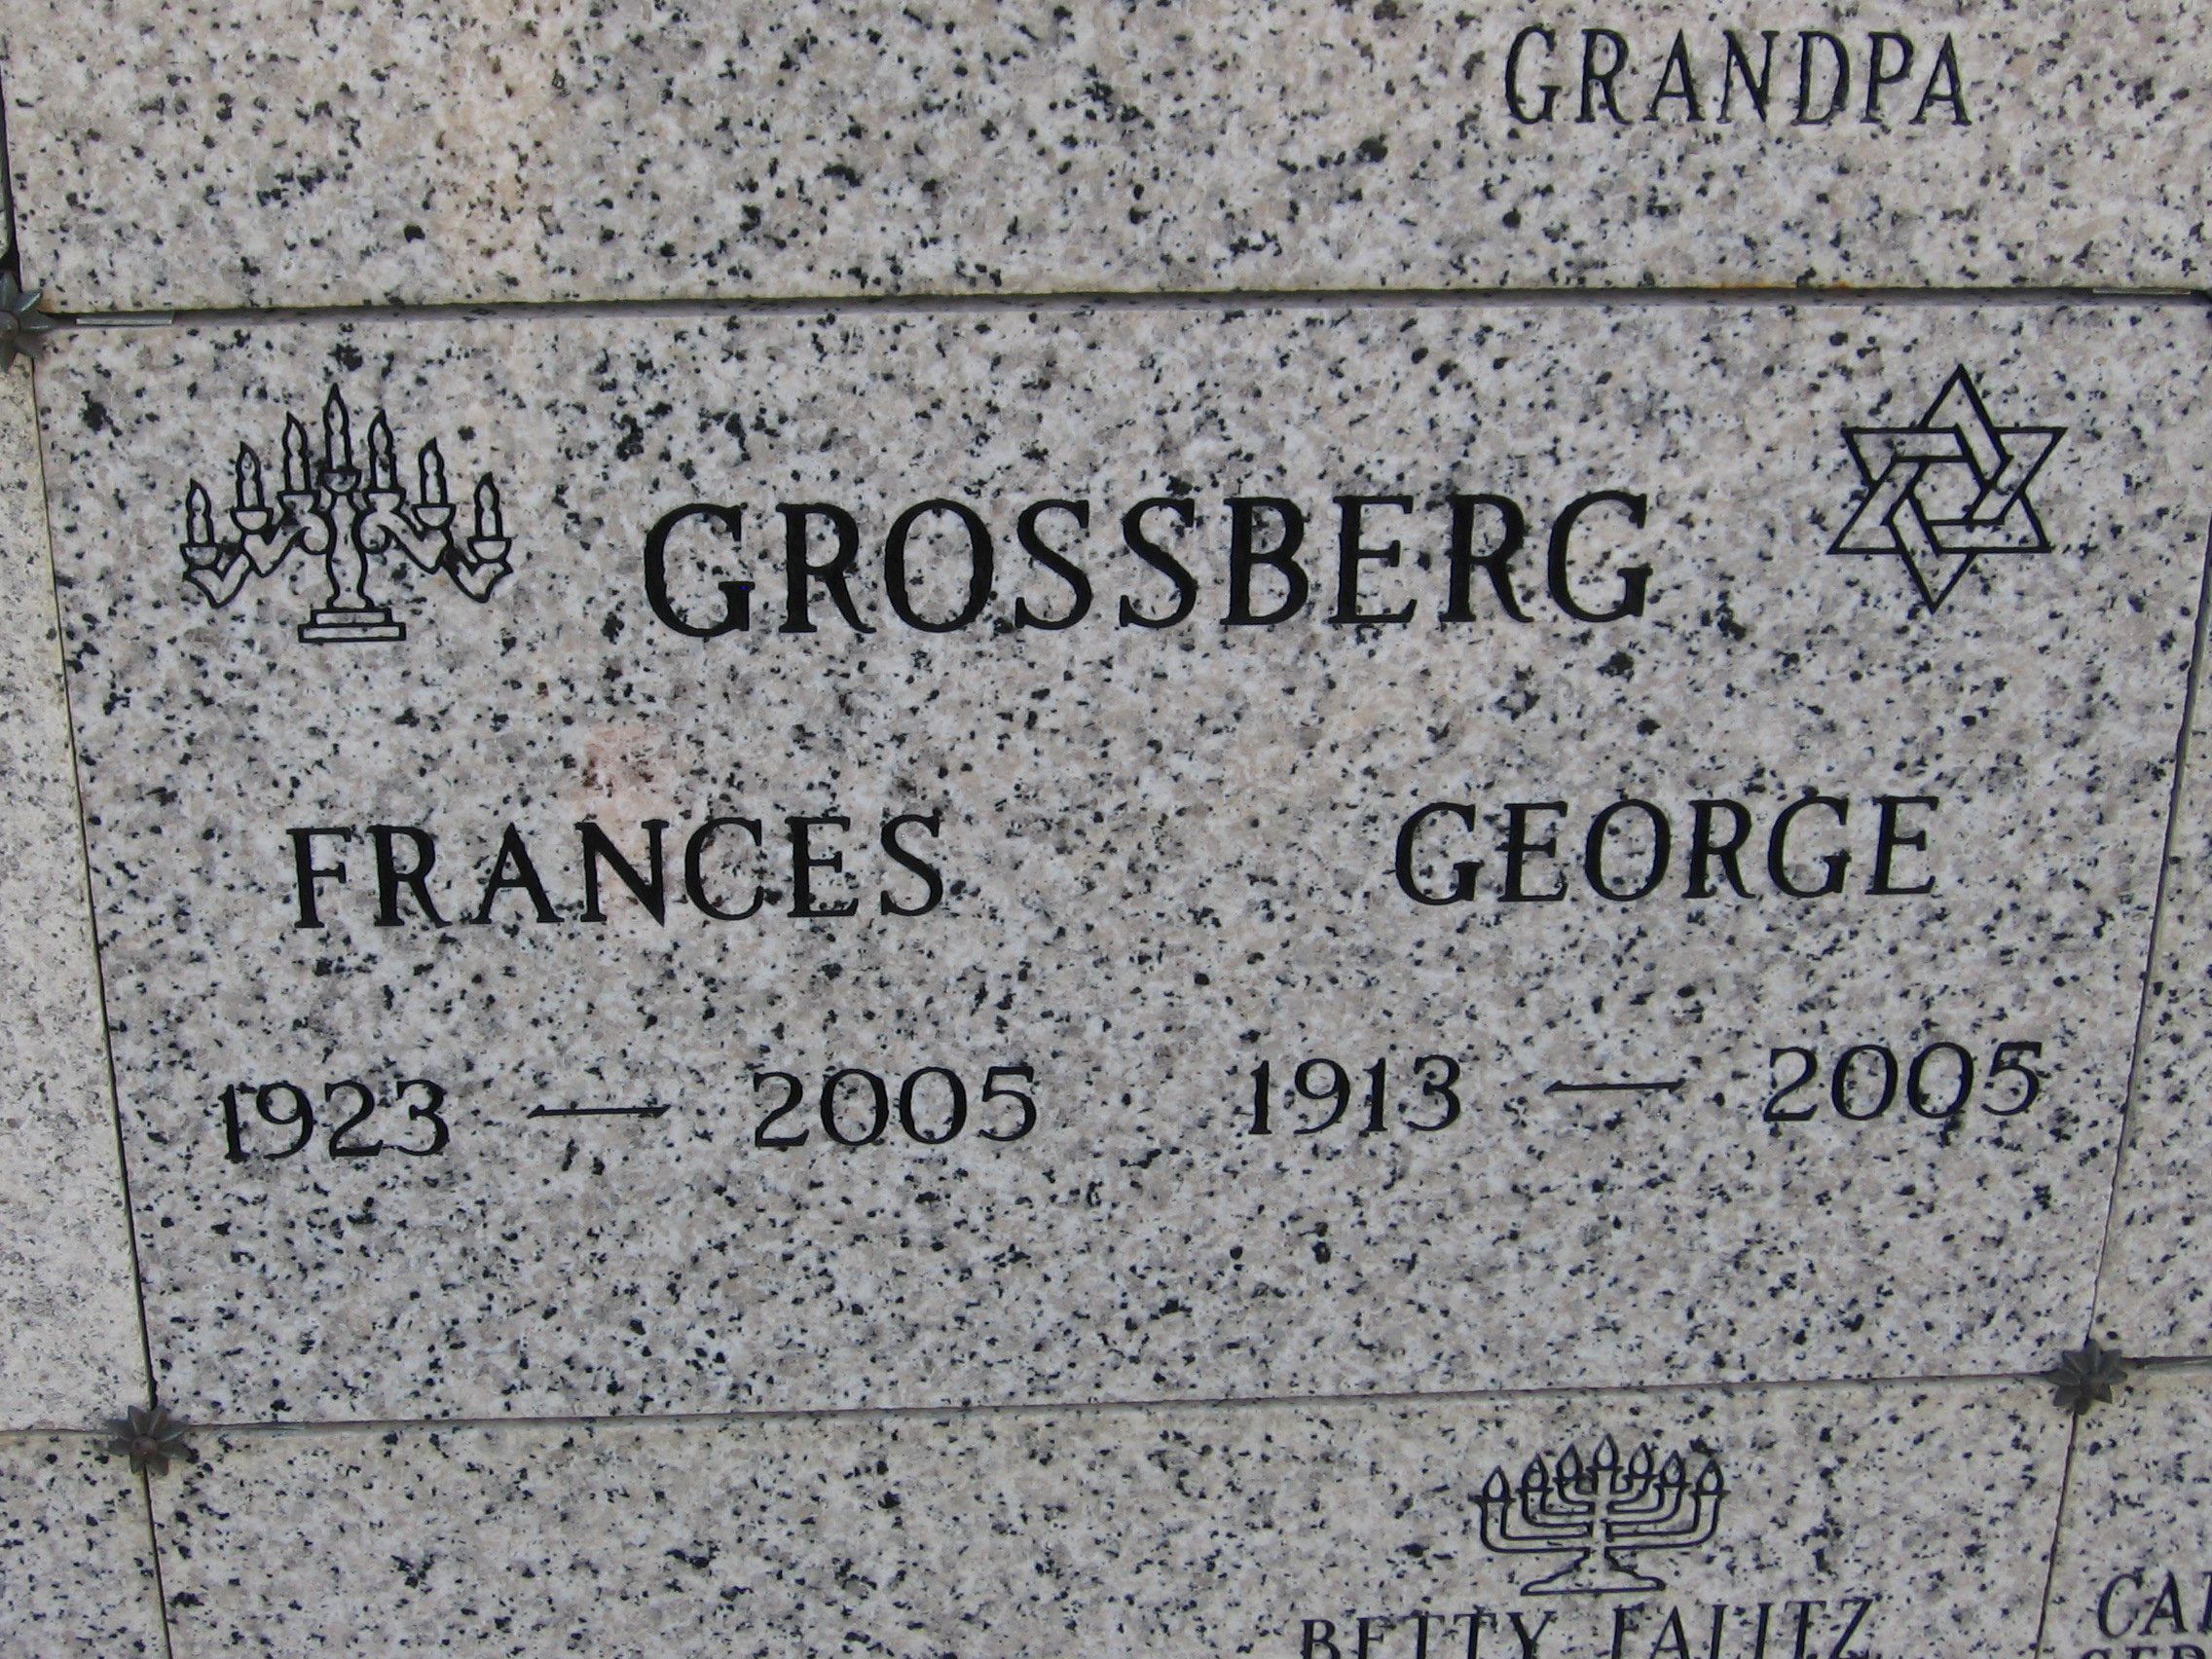 Frances Grossberg